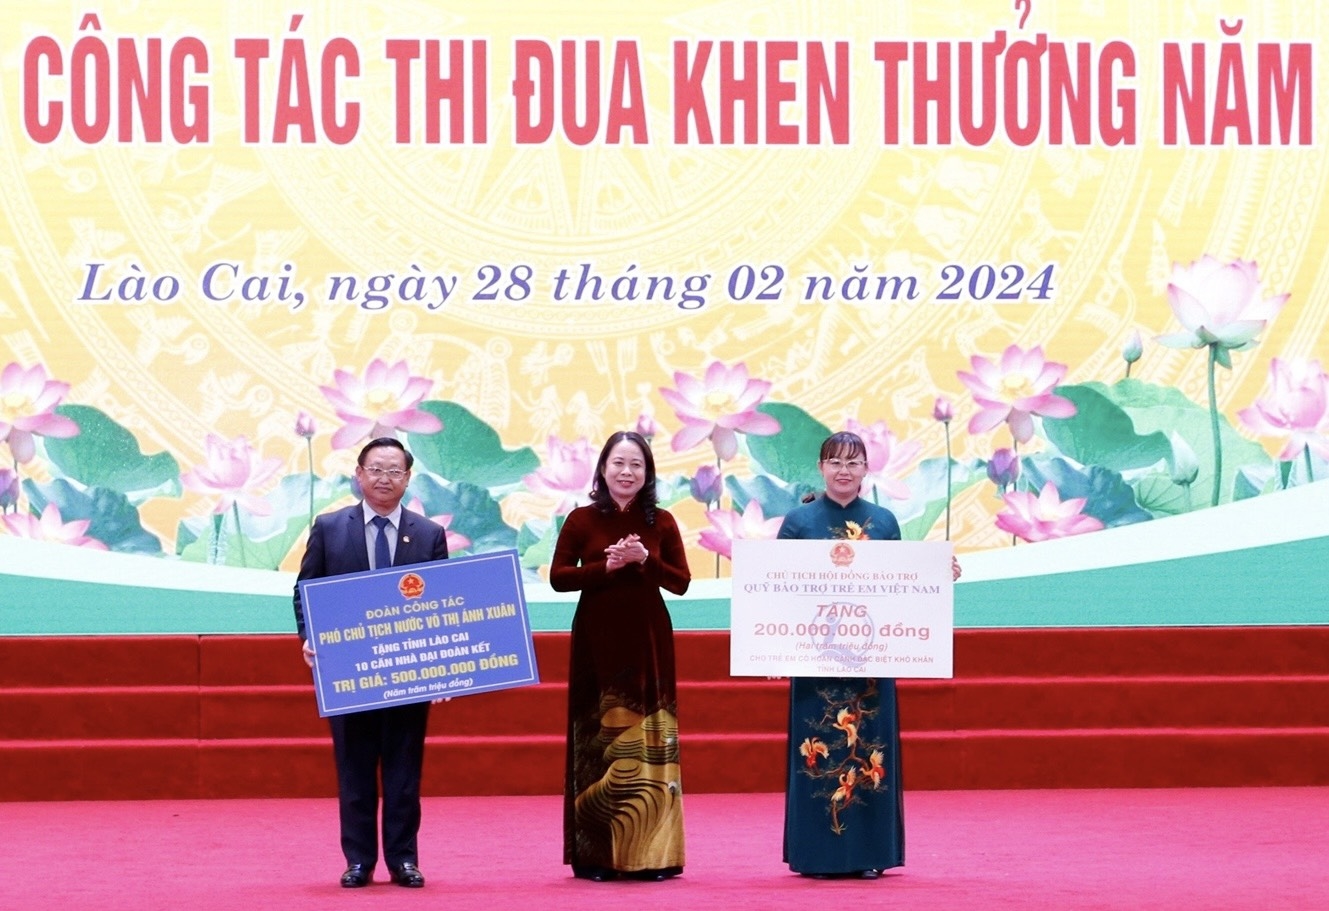 Phó Chủ tịch nước trao tặng 10 căn nhà Đại đoàn kết trị giá 500 triệu đồng và 200 triệu đồng cho trẻ em có hoàn cảnh khó khăn tỉnh Lào Cai